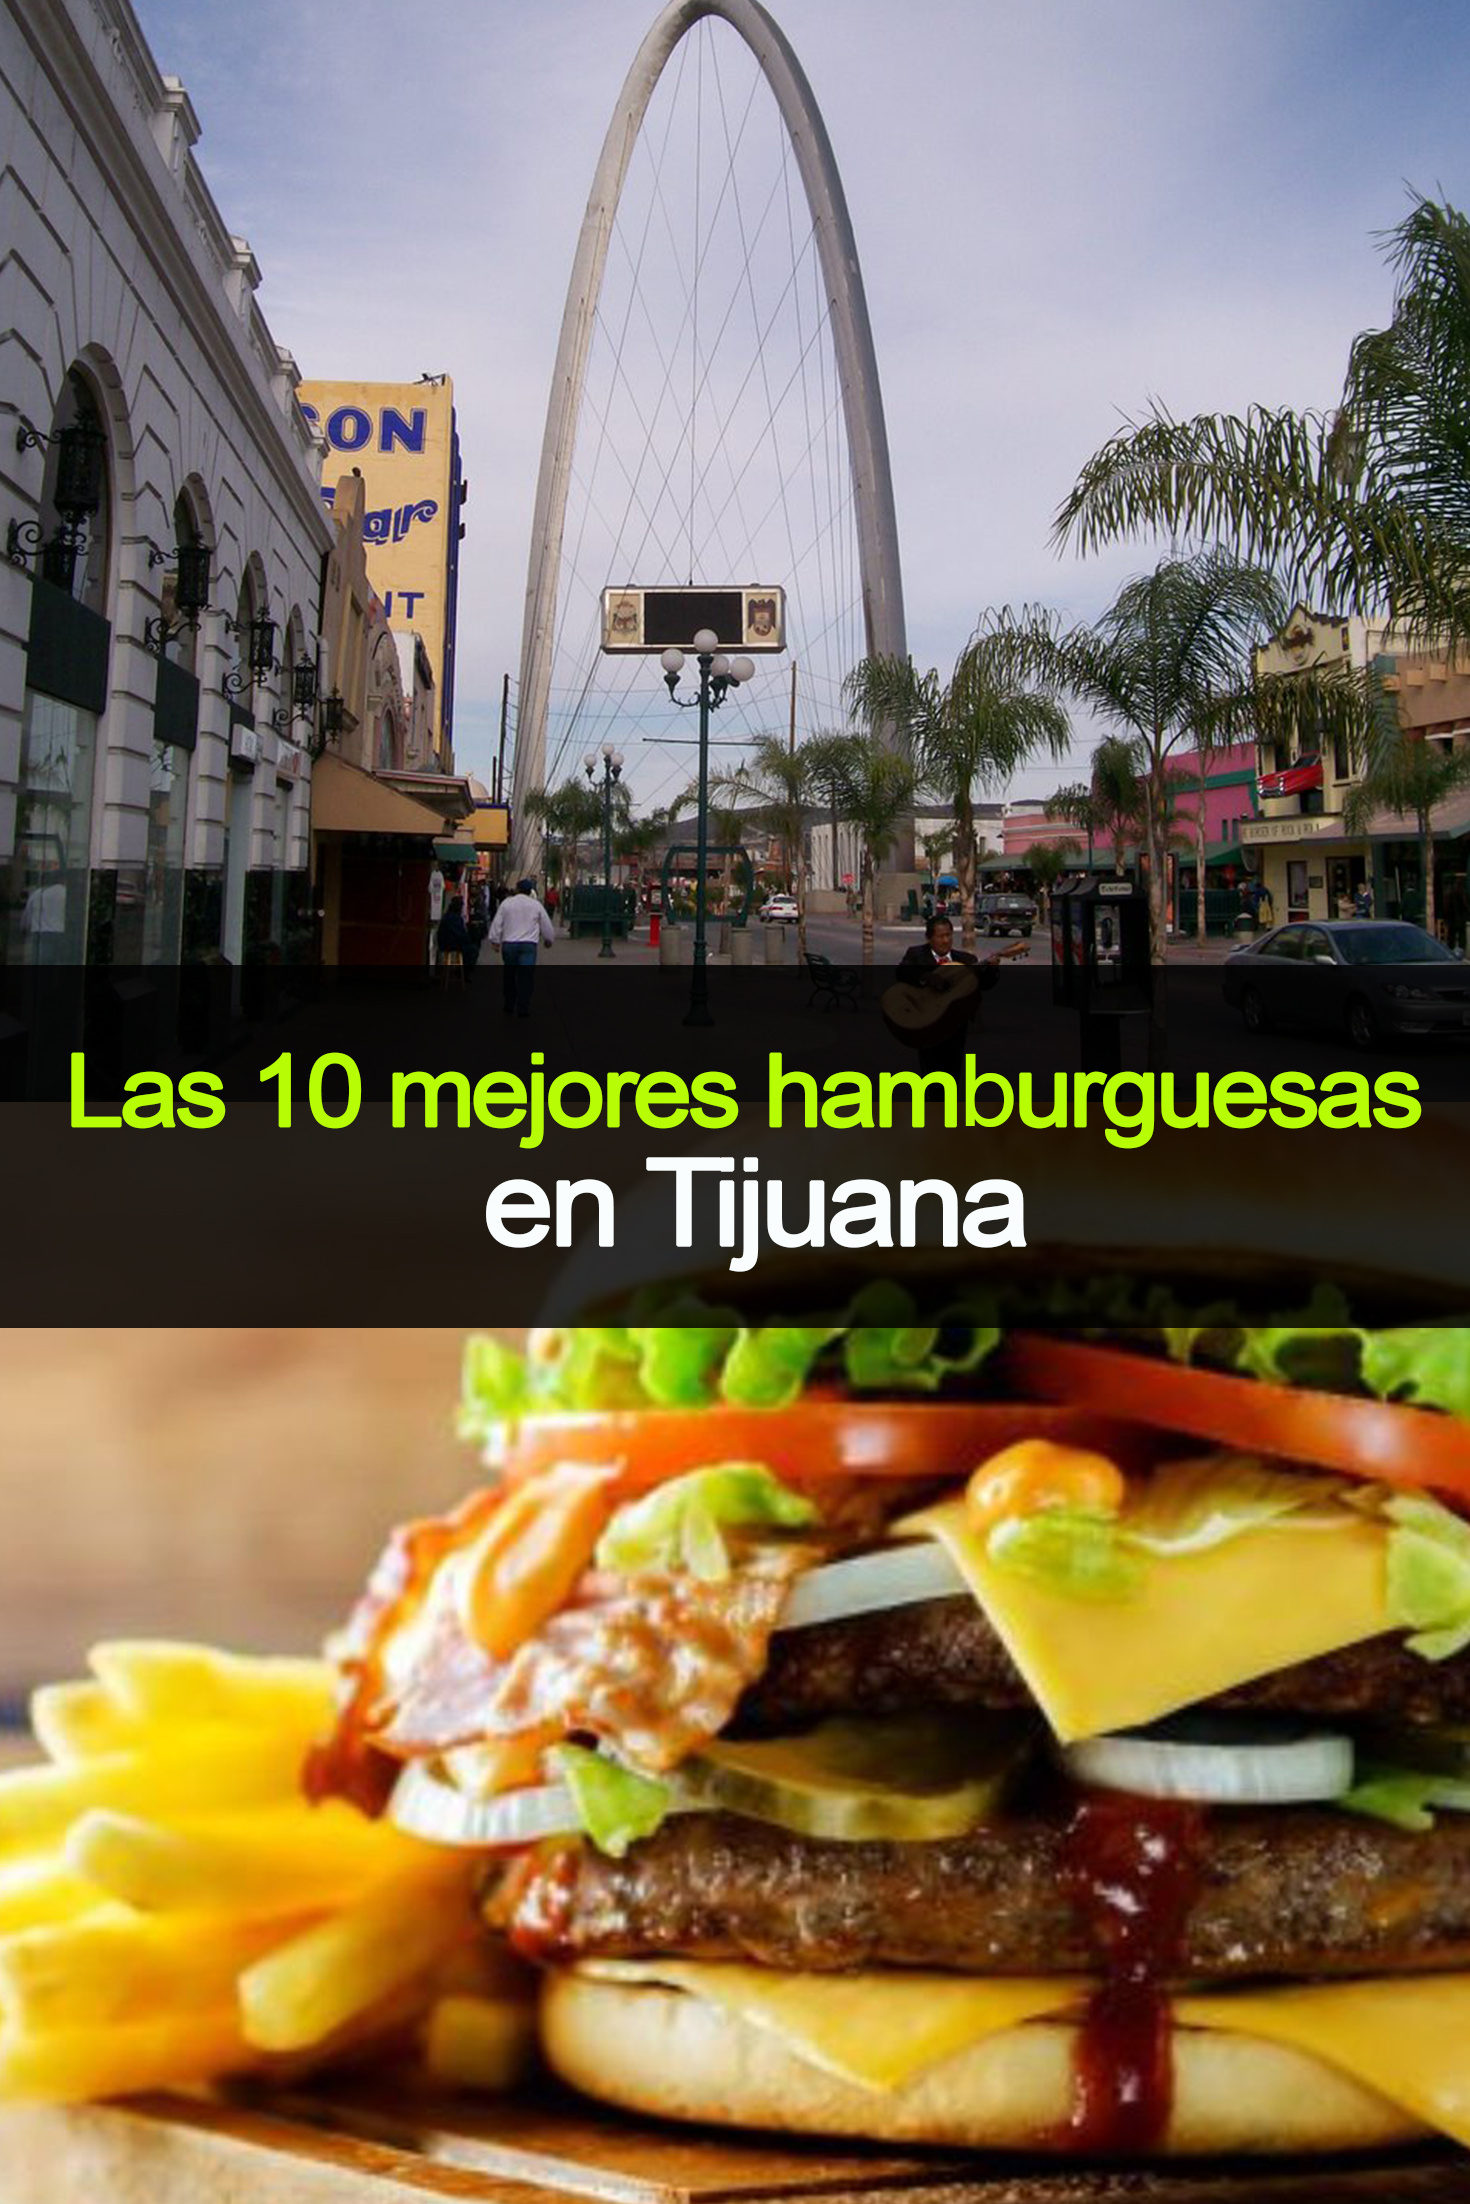 Las 10 mejores hamburguesas en Tijuana que tienes que probar